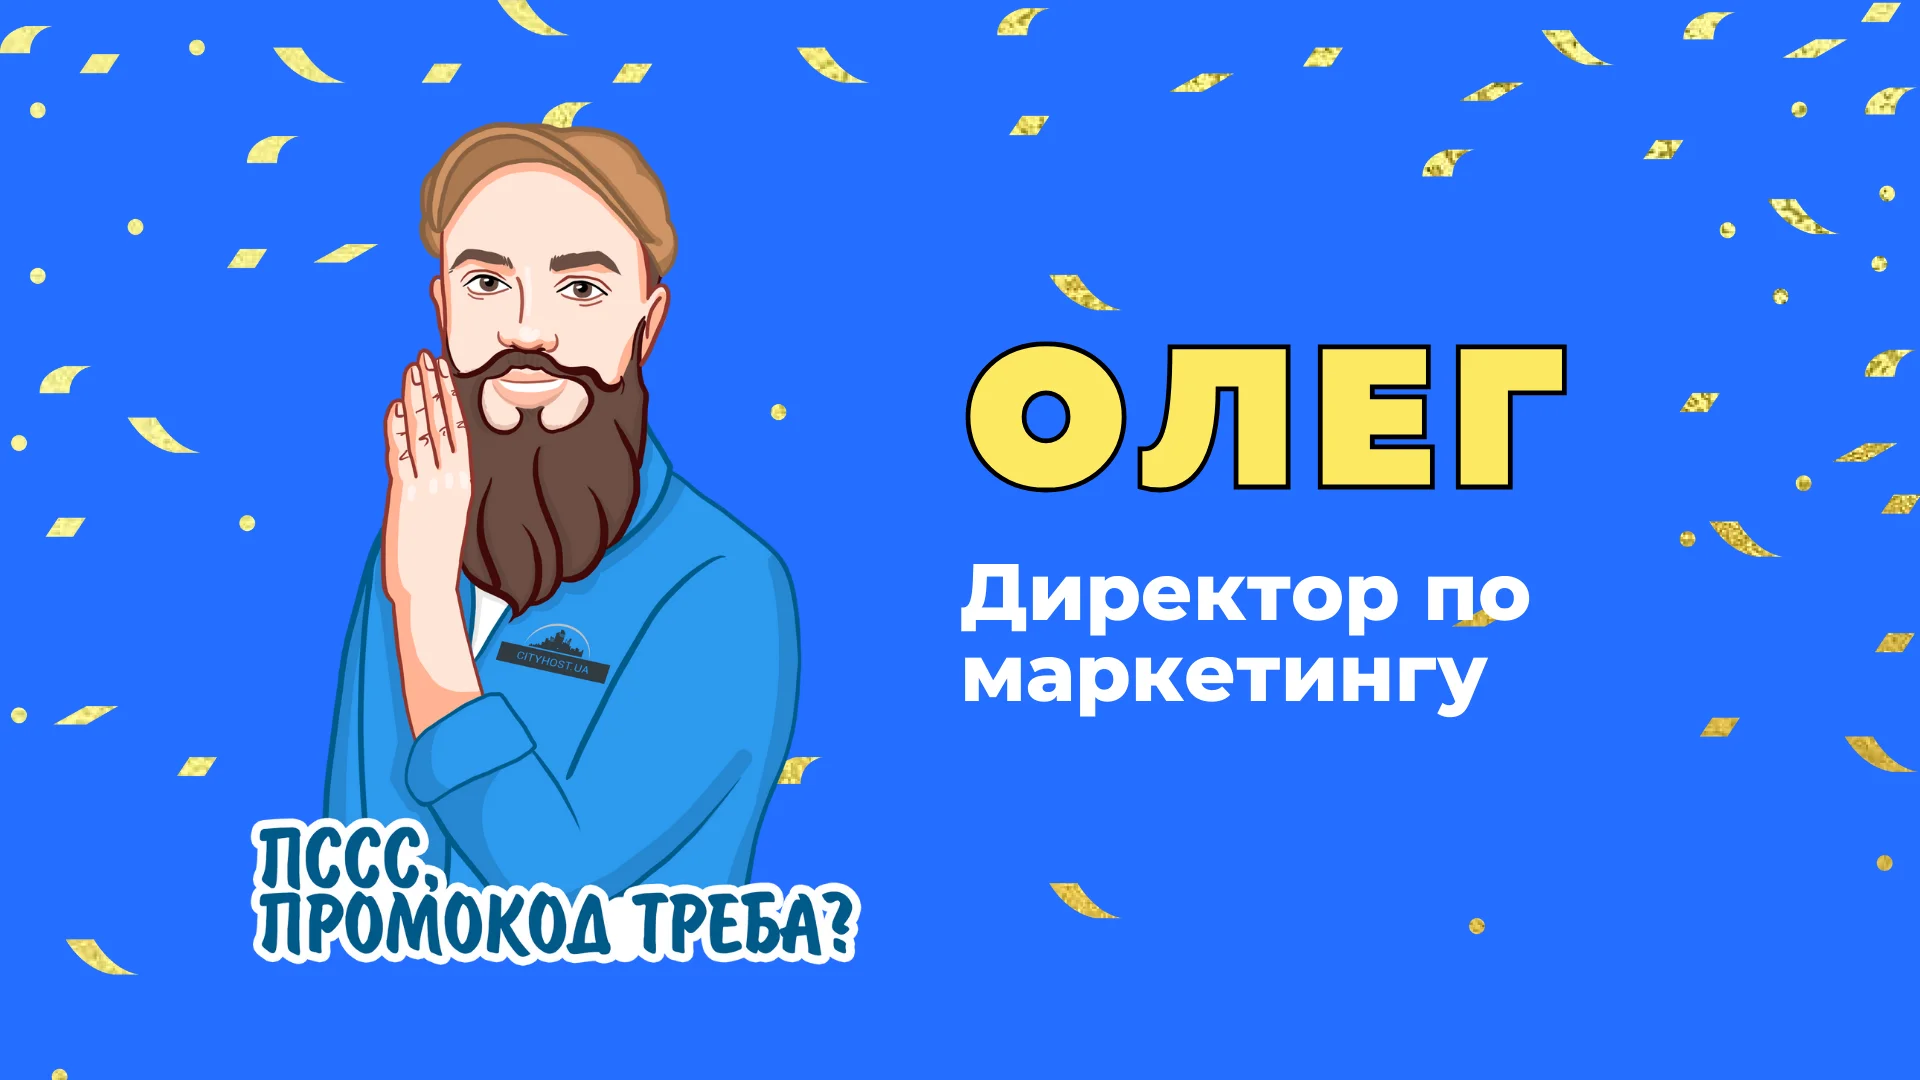 Олег - директор по маркетингу